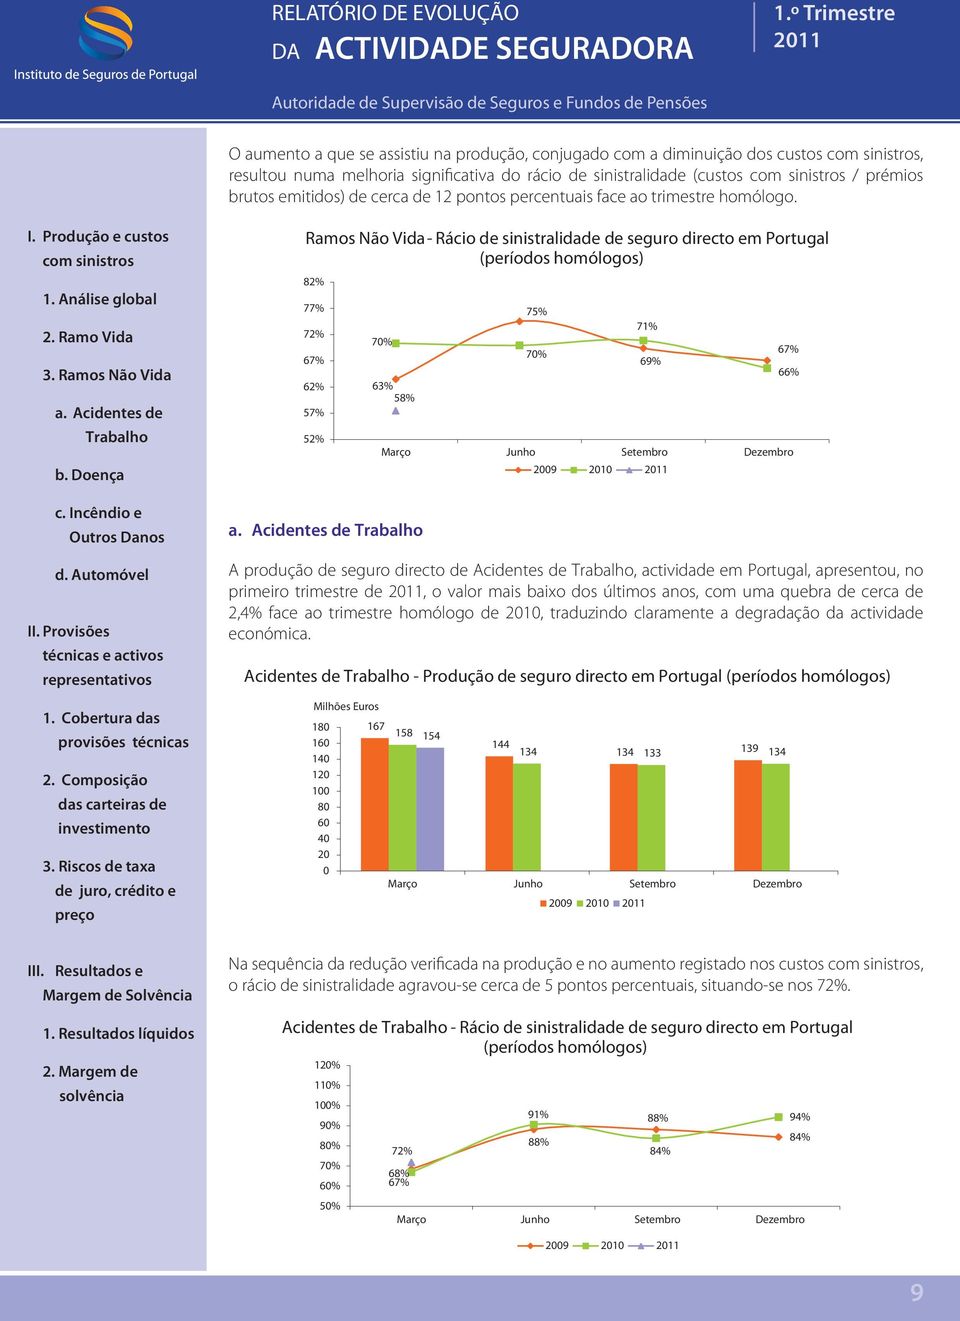 Ramos Não Vida - Rácio de sinistralidade de seguro directo em Portugal (períodos homólogos) 82% 77% 72% 67% 62% 57% 52% 7% 63% 58% 75% 7% 71% 69% 29 21 A produção de seguro directo de Acidentes de,